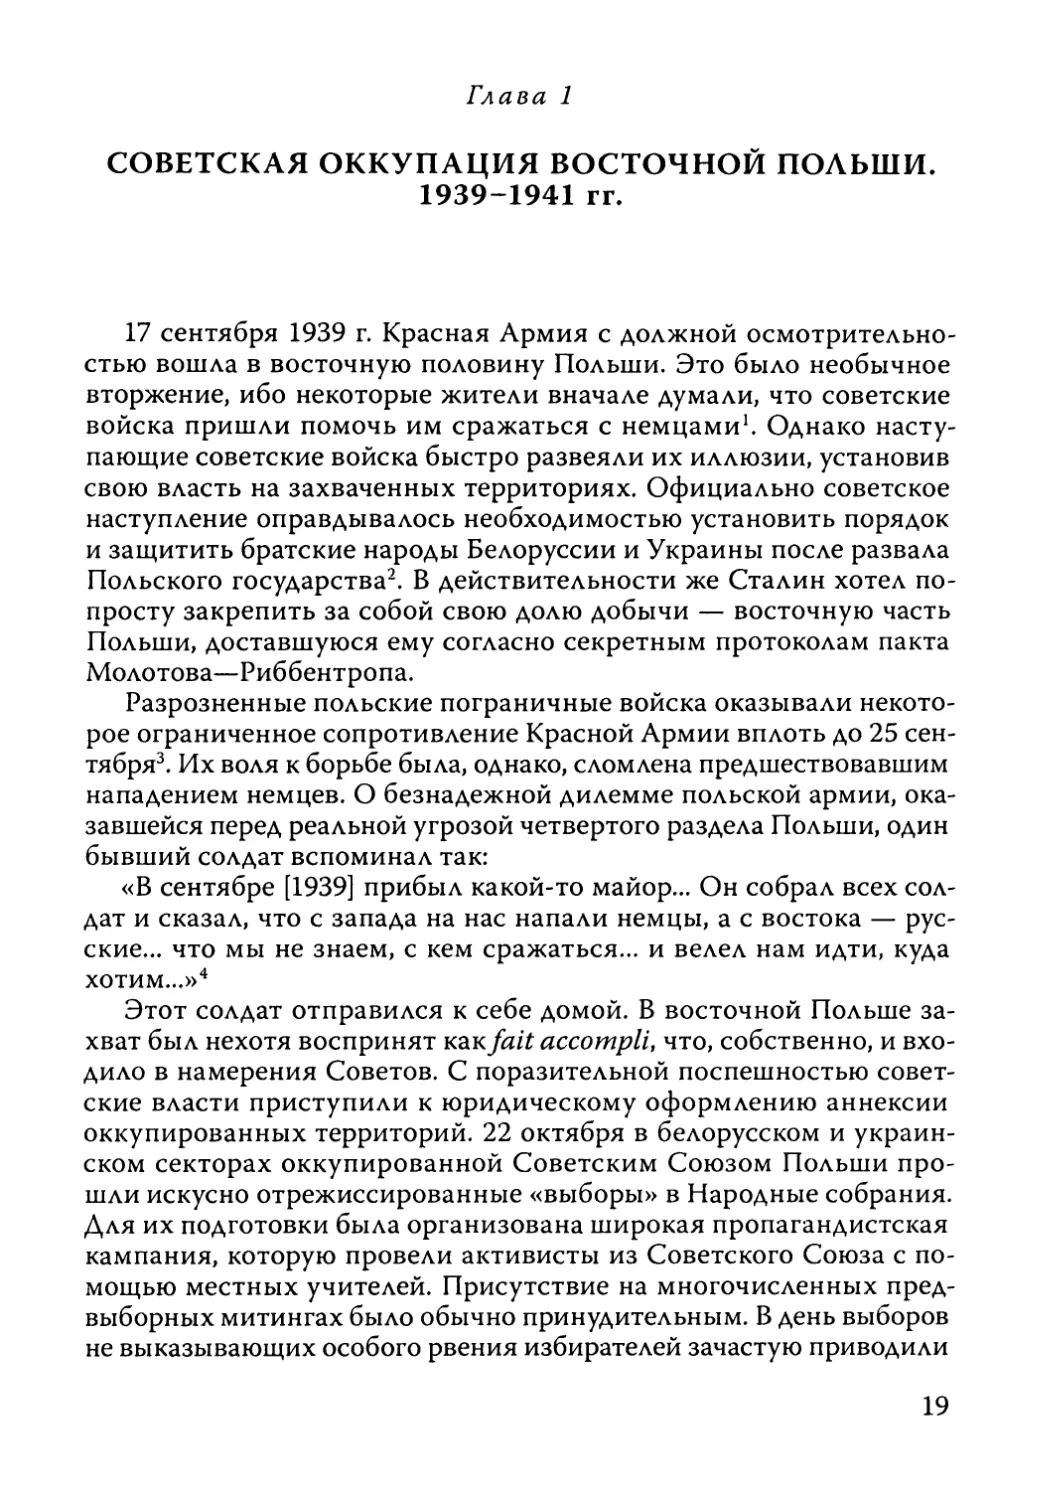 Глава 1. Советская оккупация восточной Польши, 1939-1941 гг